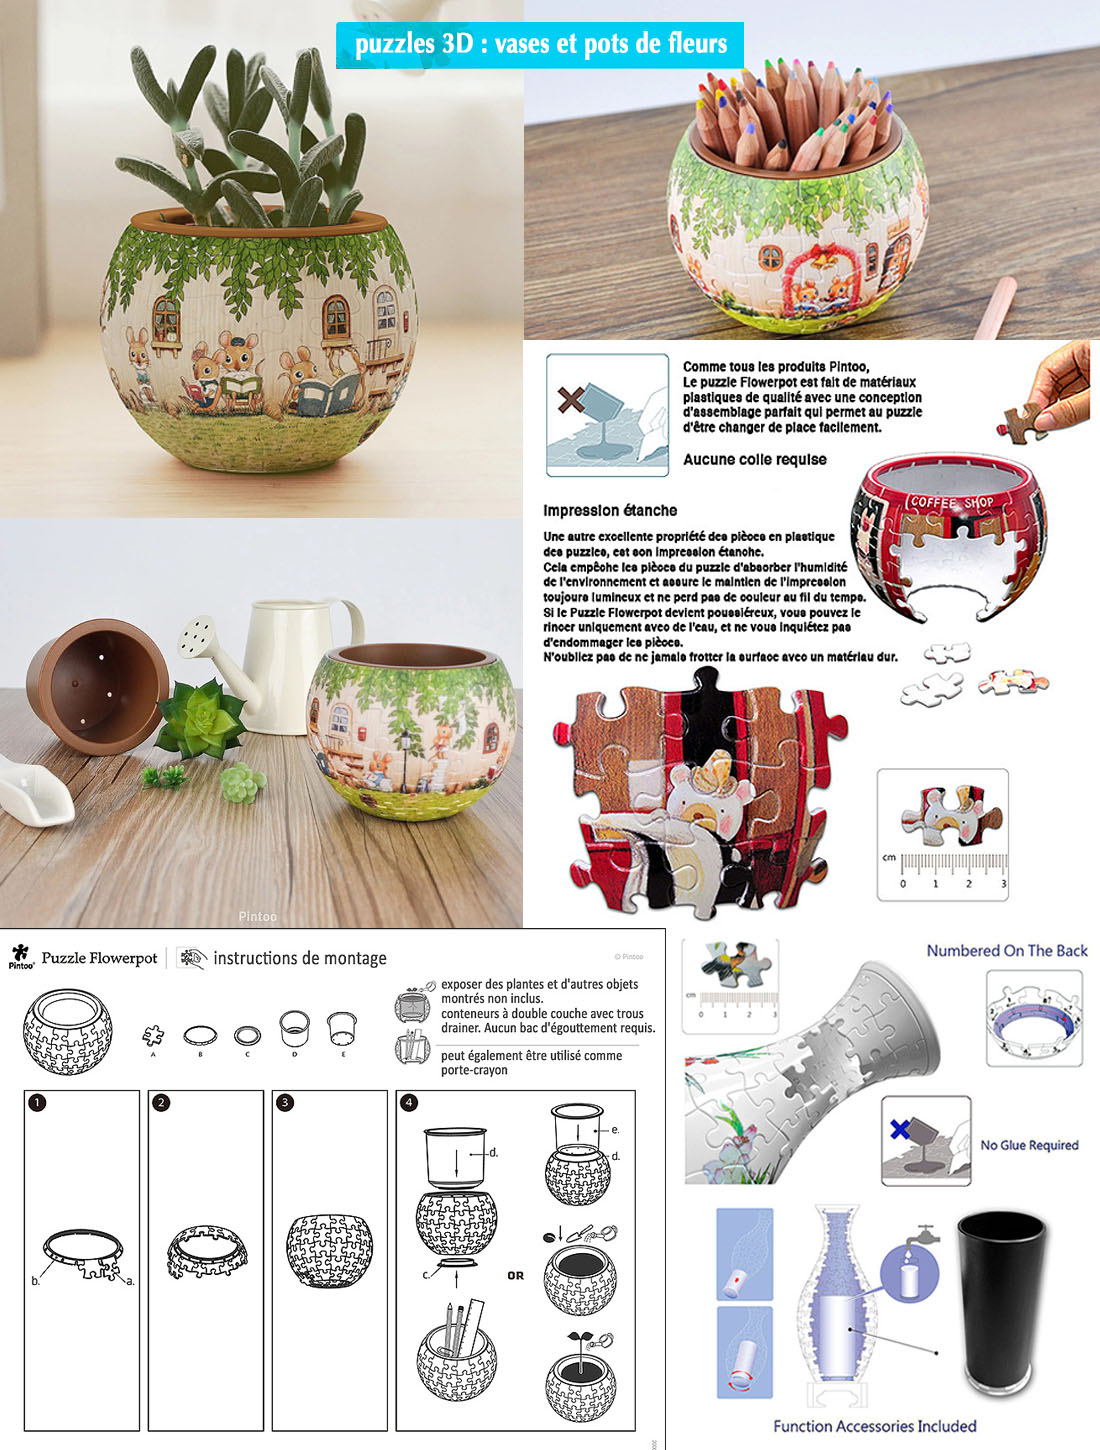 informations sur extraordinaires puzzles 3D vases et pots de fleurs marque Pintoo